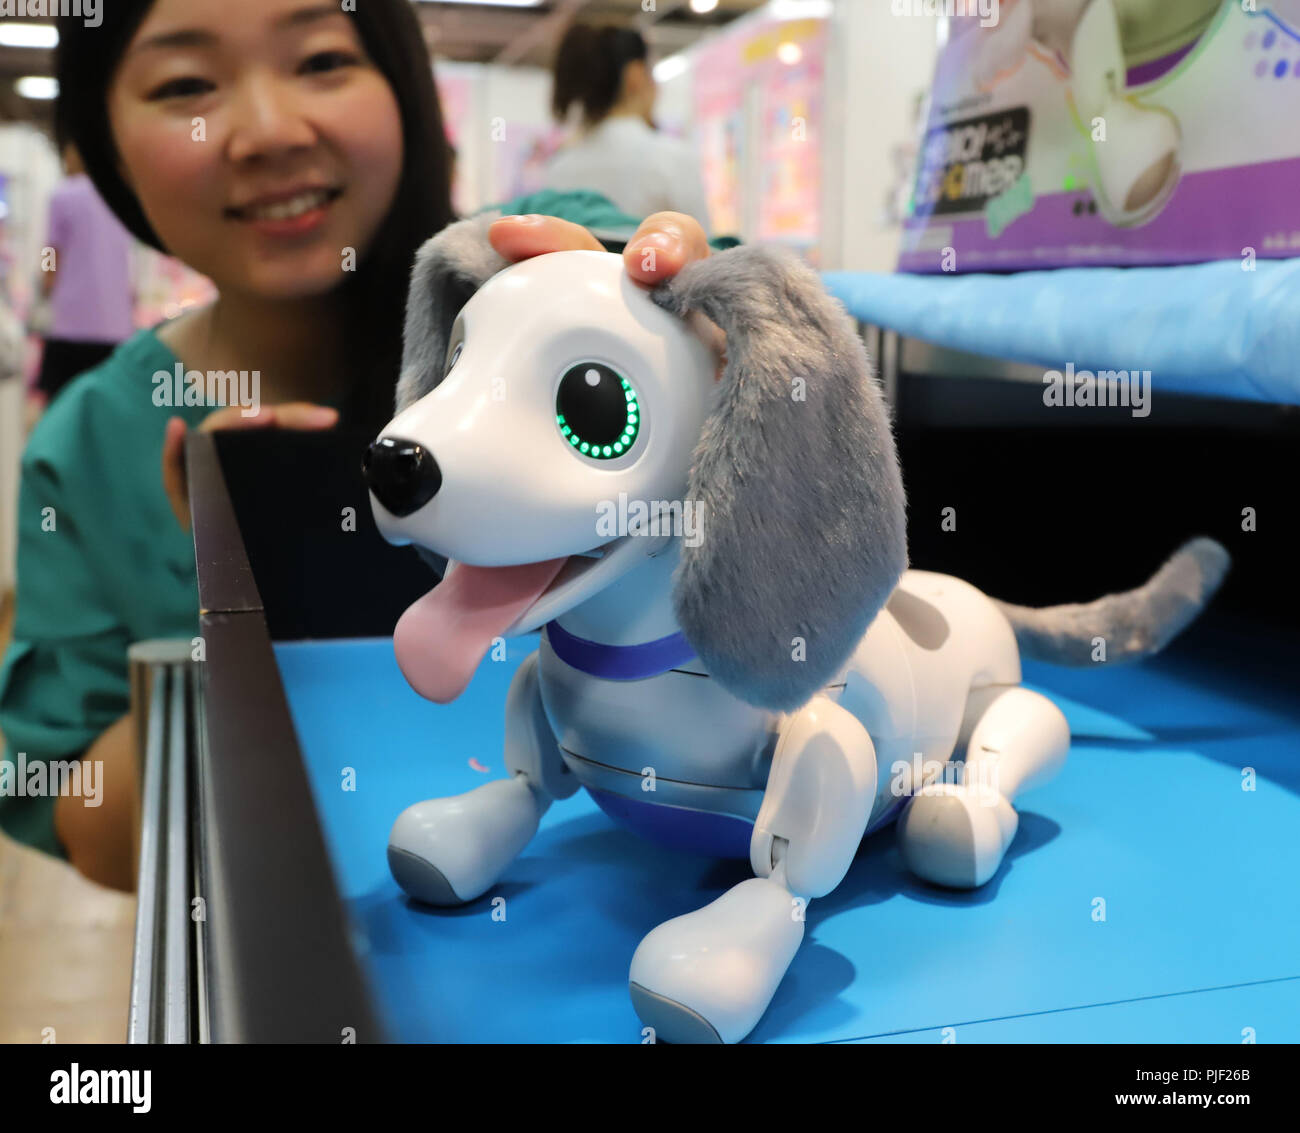 Tokio, Japón. 5 Sep, 2018. Japón toymaker Tommy empleado demuestra el nuevo  robot con forma de perro "Zoomer-Miniature Teckel' en dos días de  exhibición de juguetes en Tokio el miércoles, 5 de